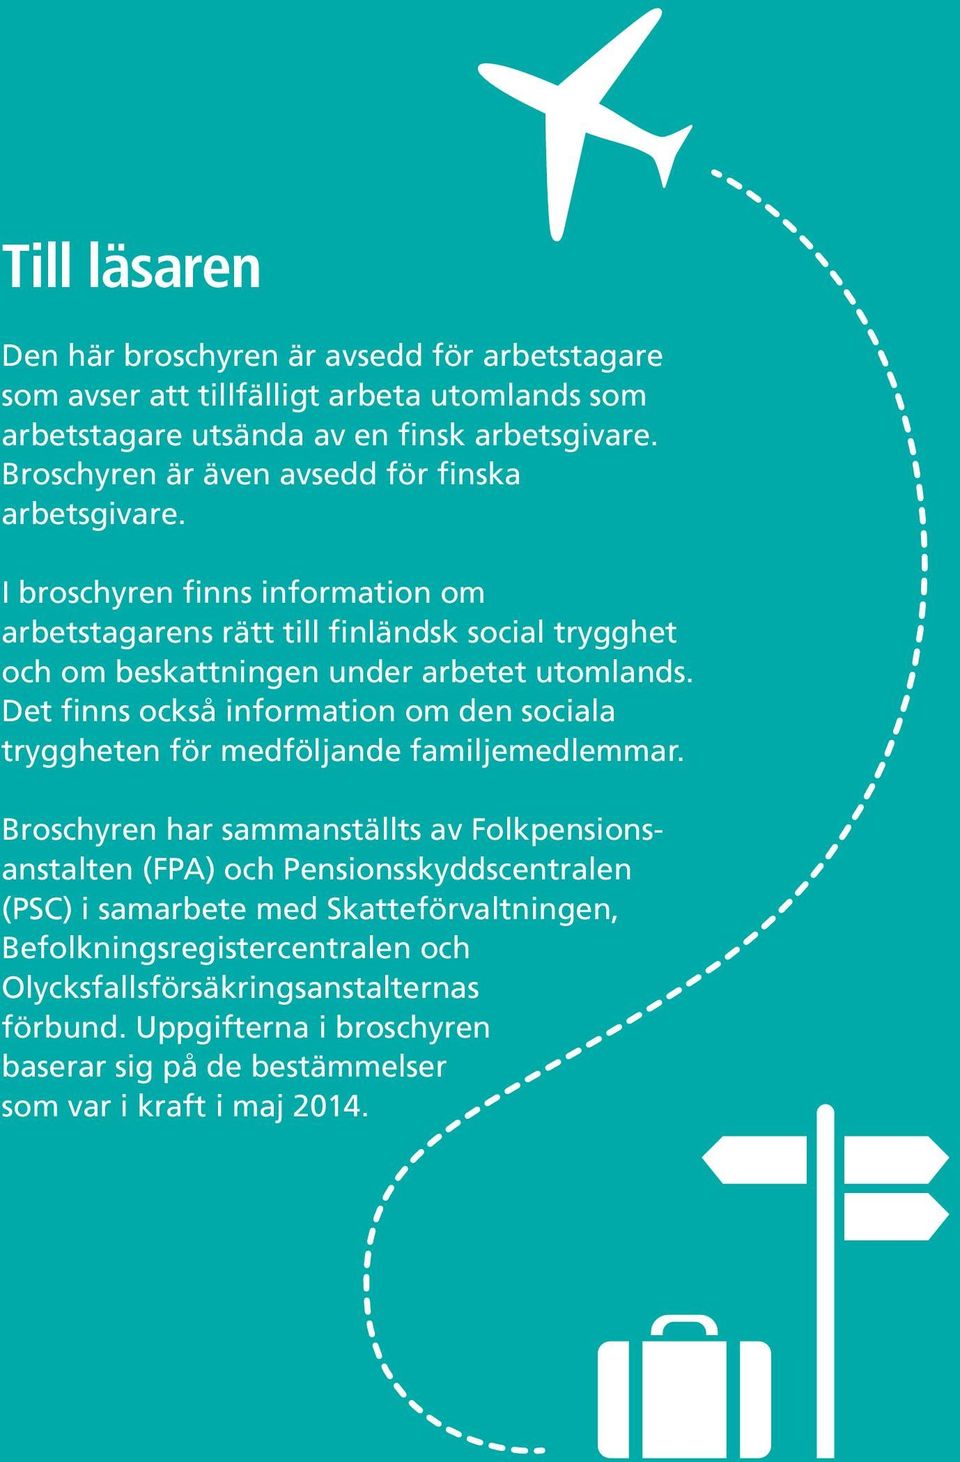 I broschyren finns information om arbetstagarens rätt till finländsk social trygghet och om beskattningen under arbetet utomlands.